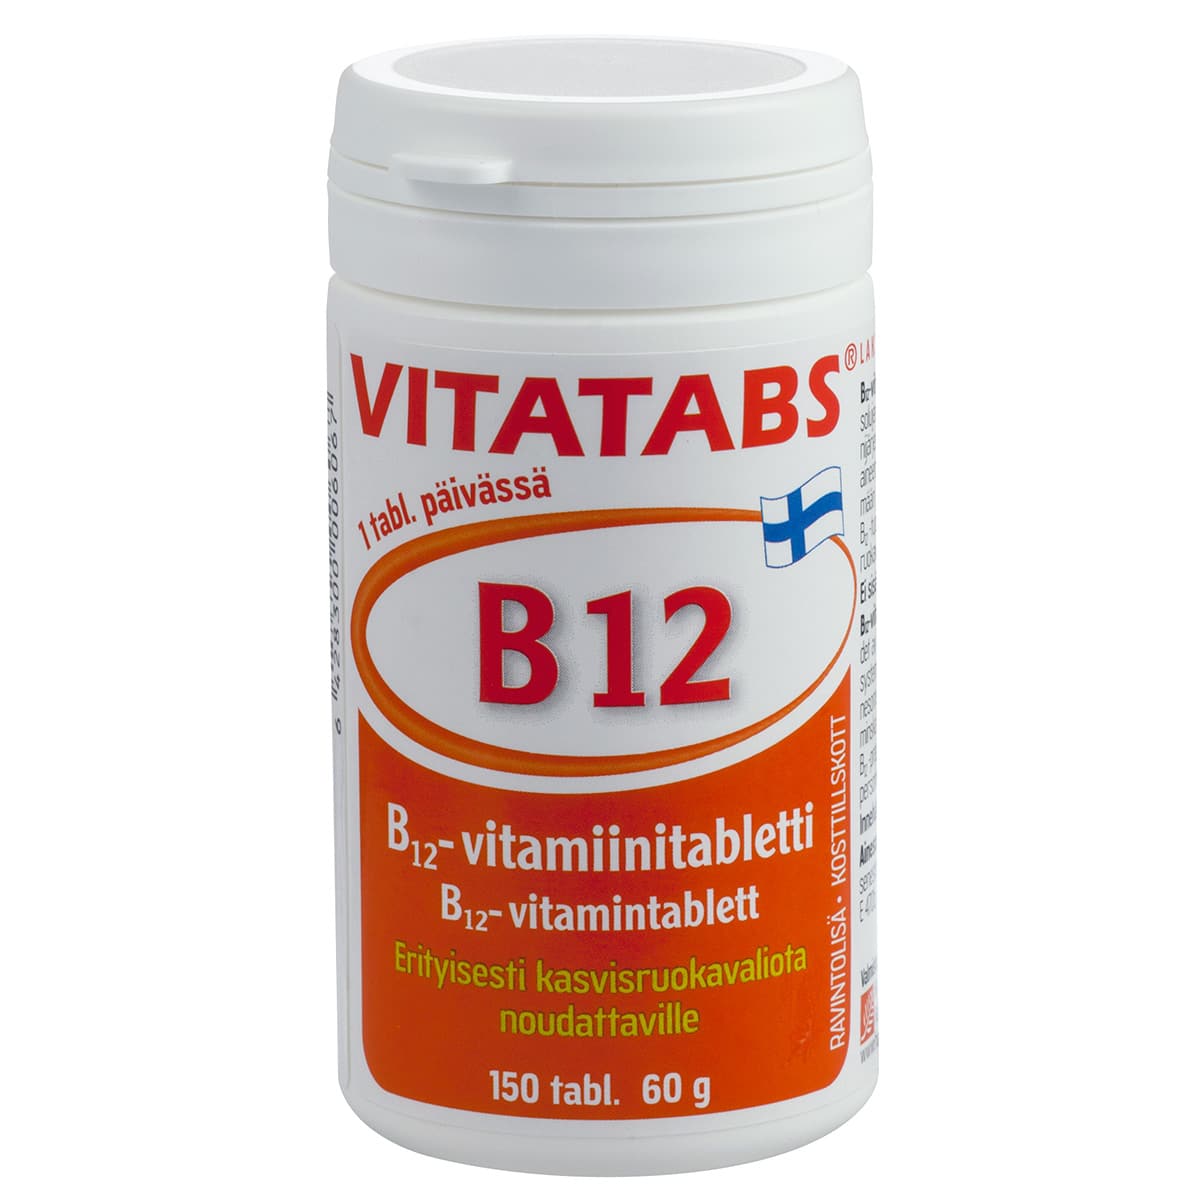 Vitatabs® B12